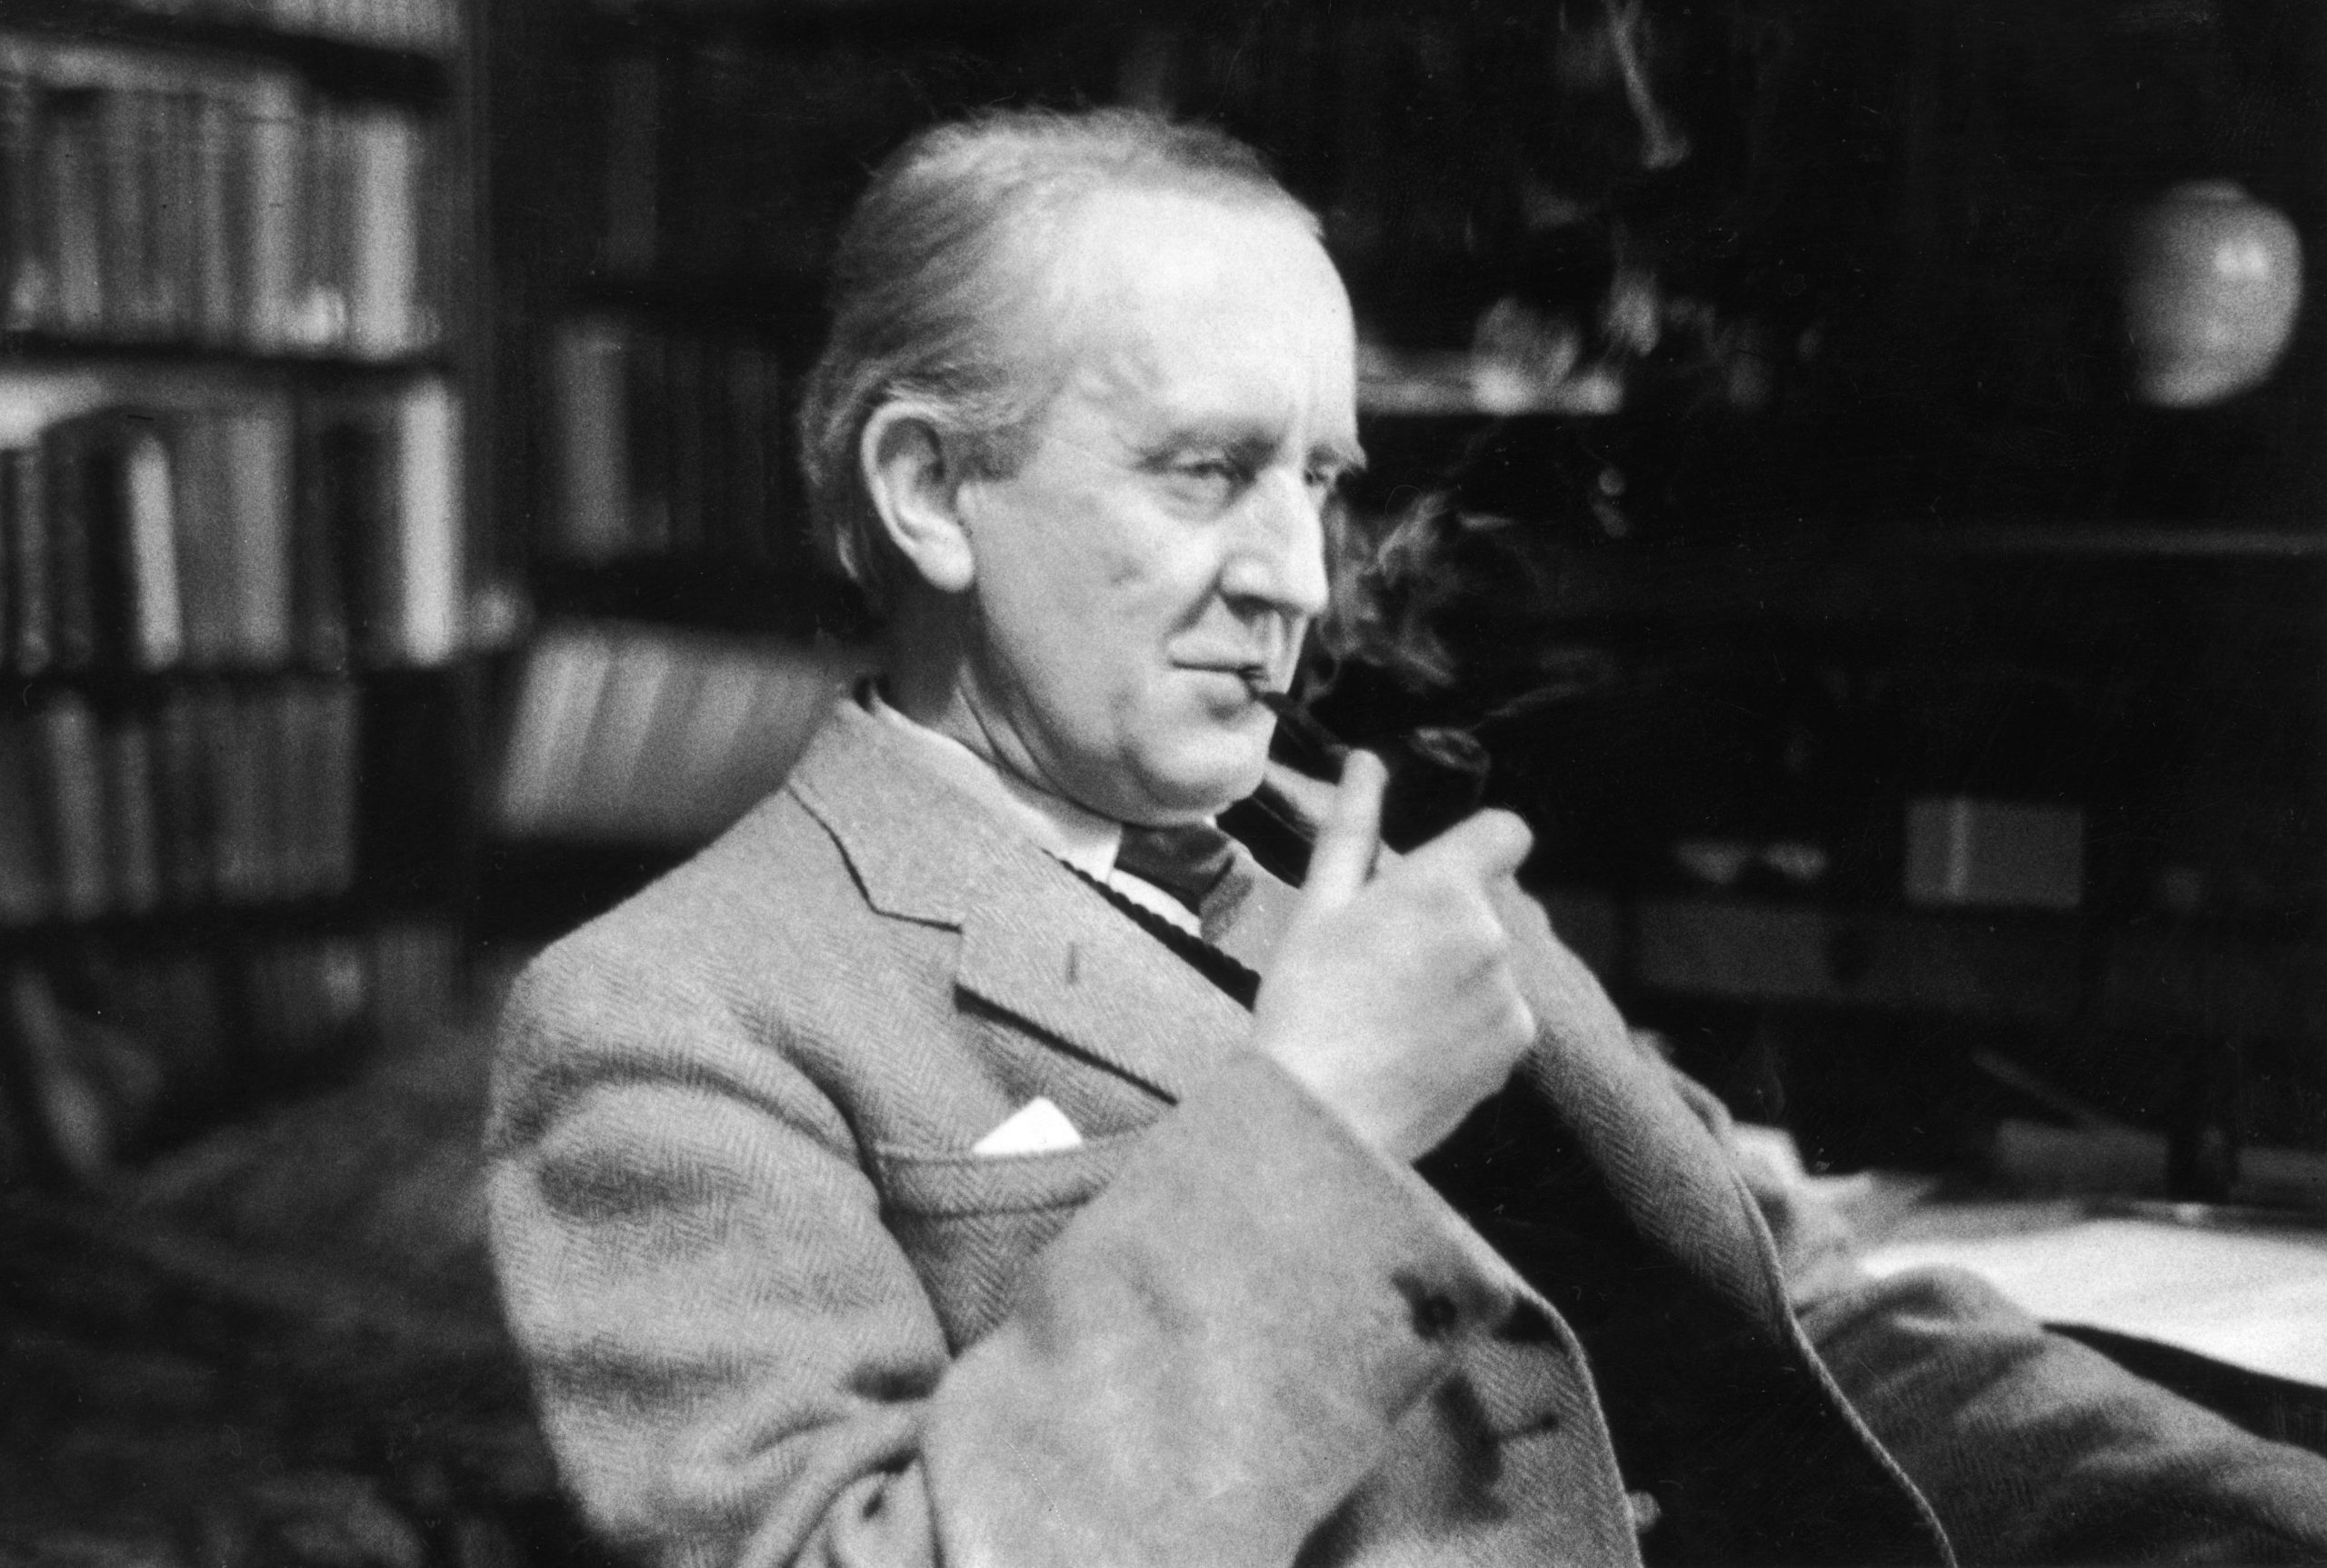 J.R.R. Tolkien publica La comunidad del anillo